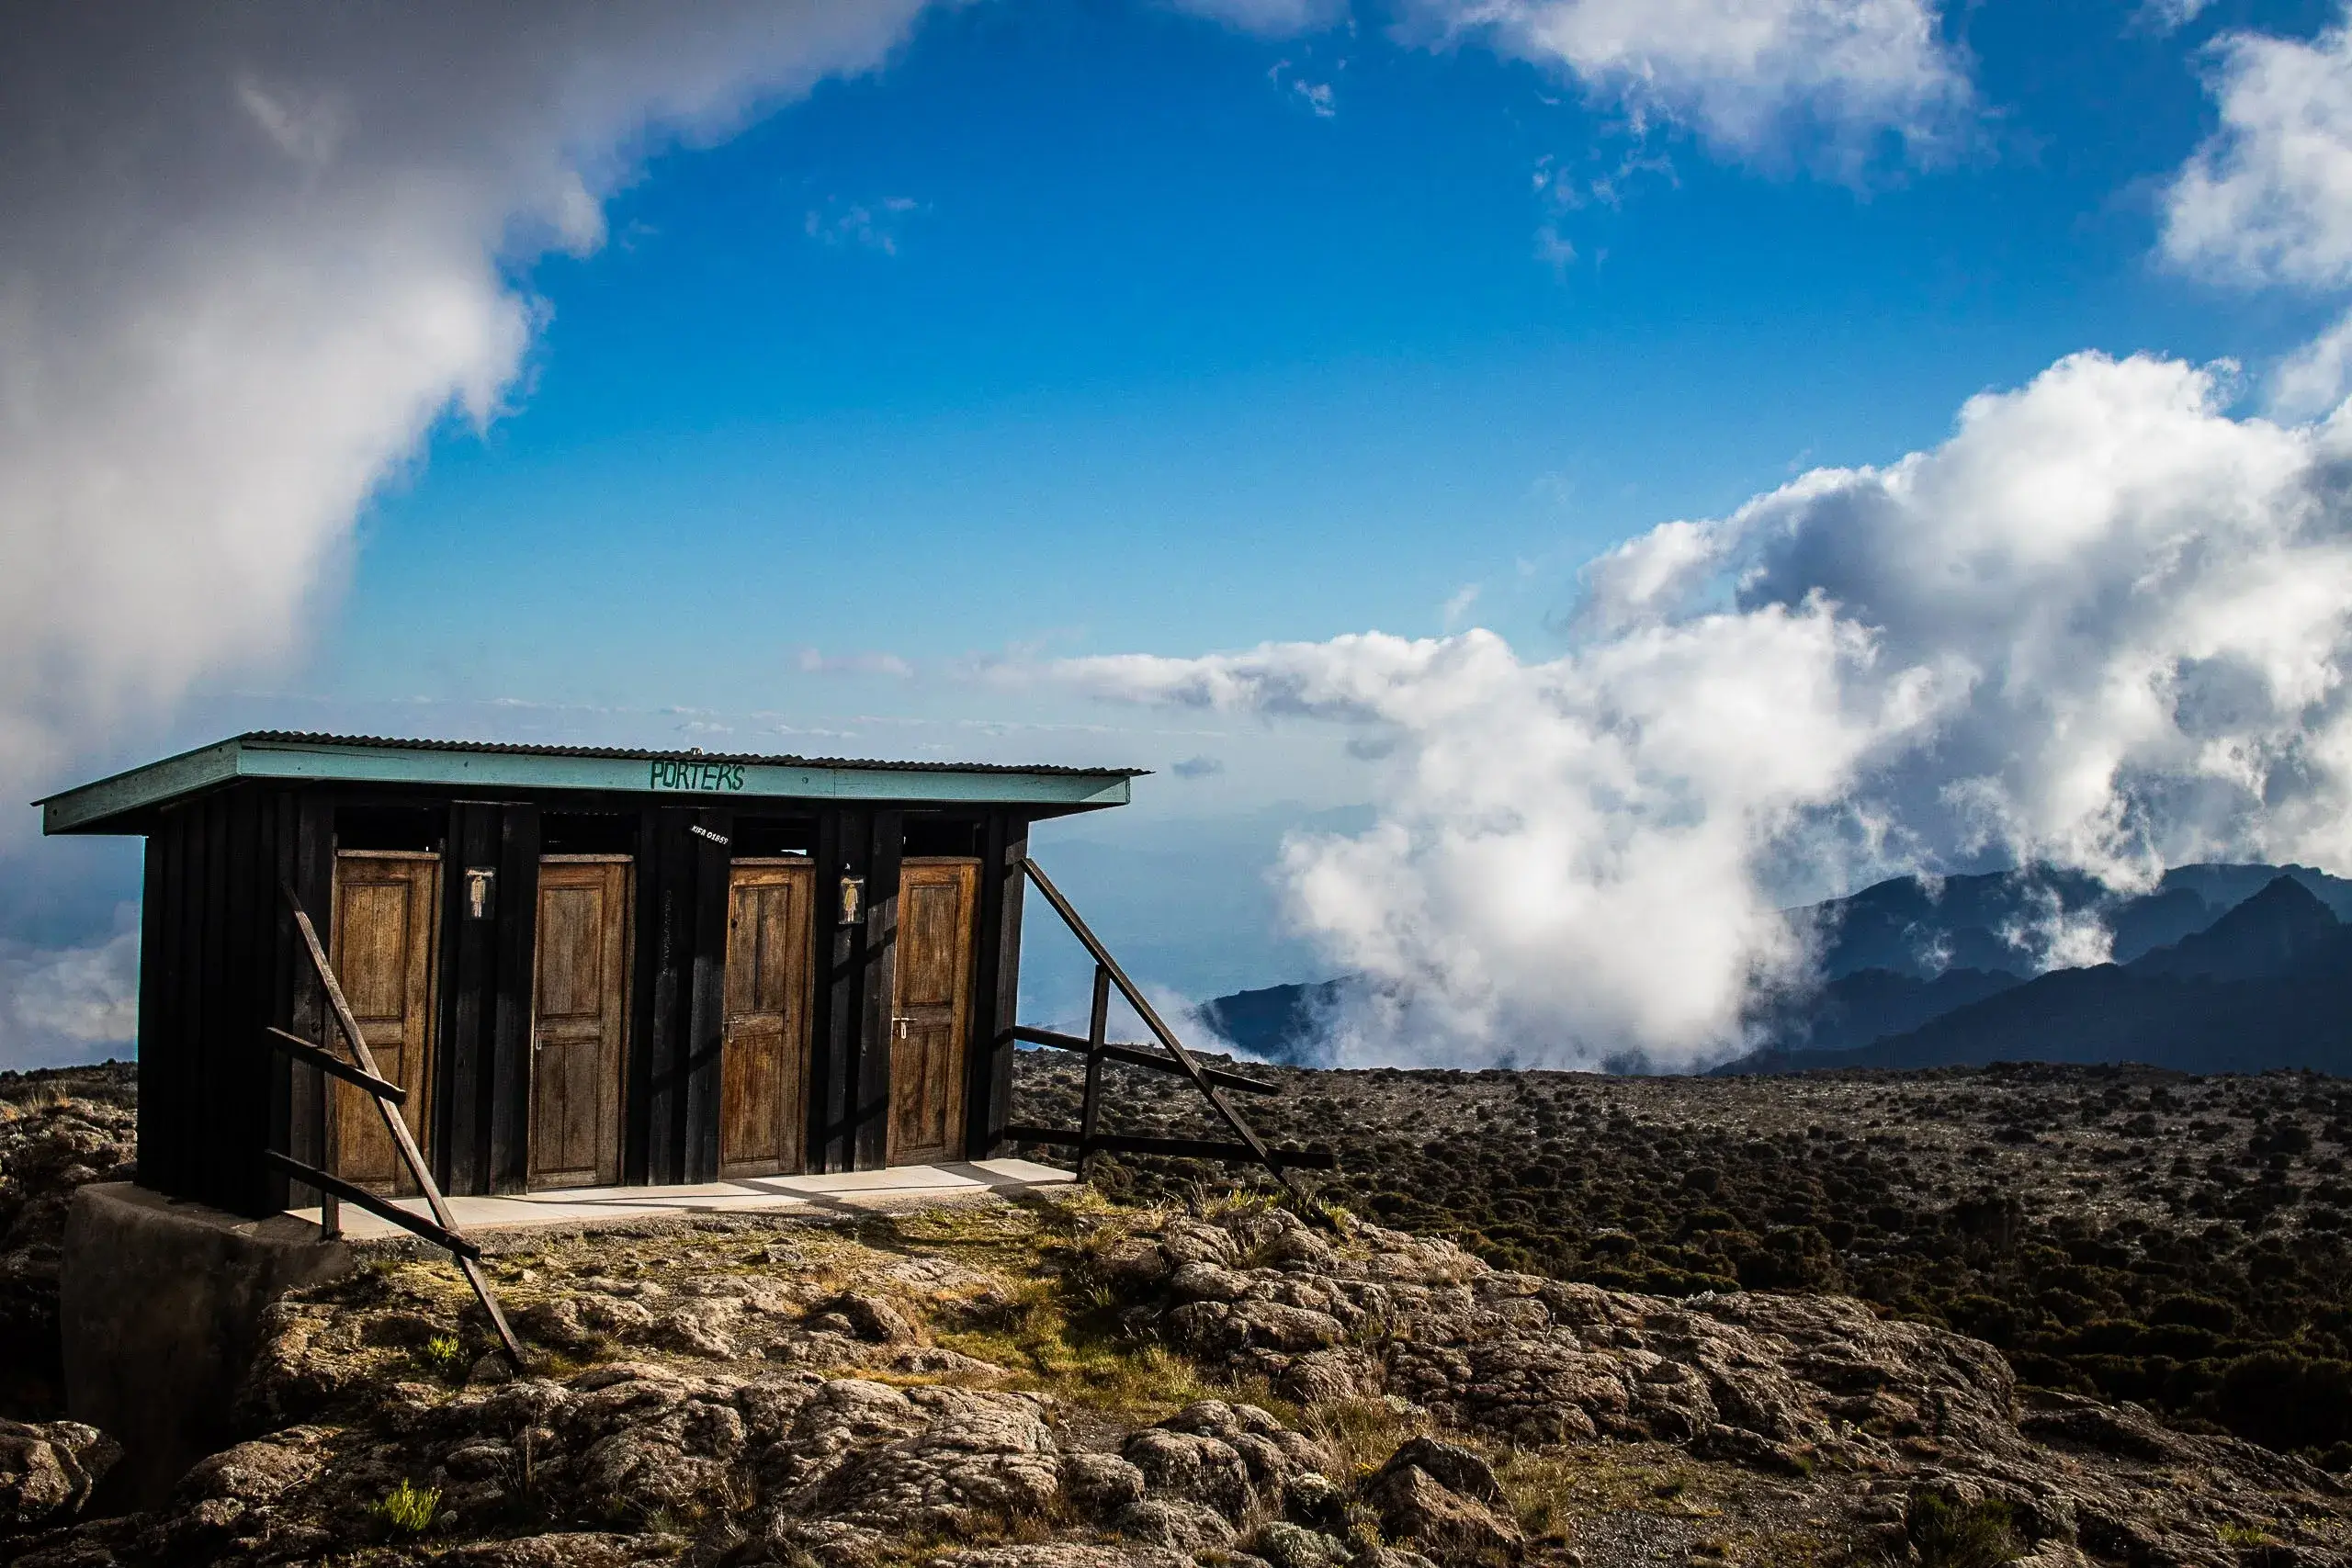 Washrooms facilities while climbing Kilimanjaro